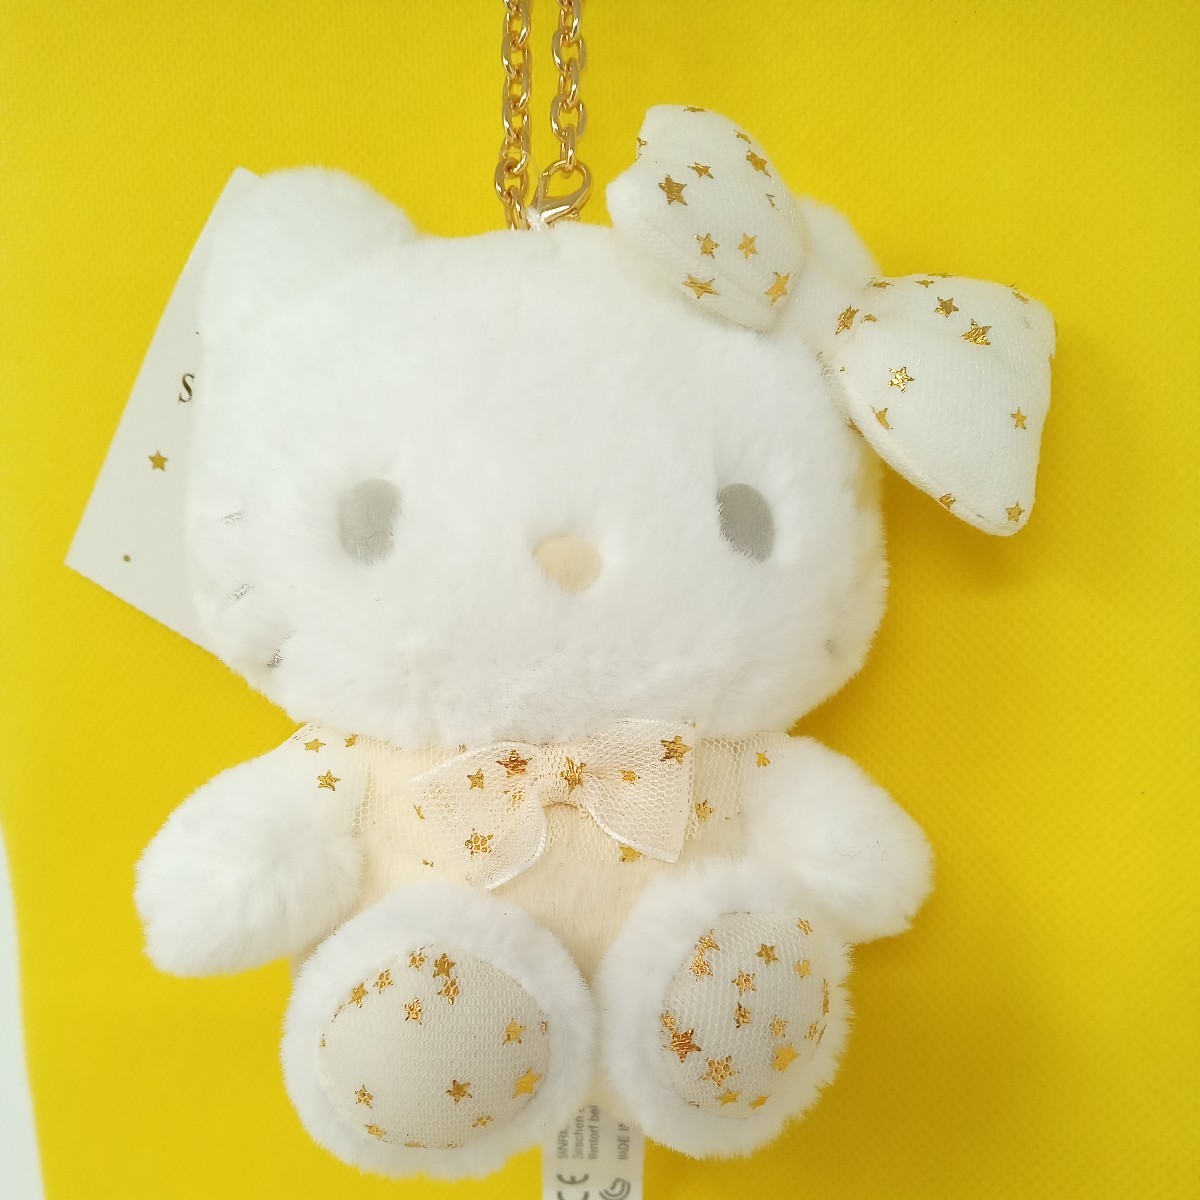  Hello Kitty мягкая игрушка эмблема держатель белый звезда нежный мех сиденье . сумка очарование Sanrio 